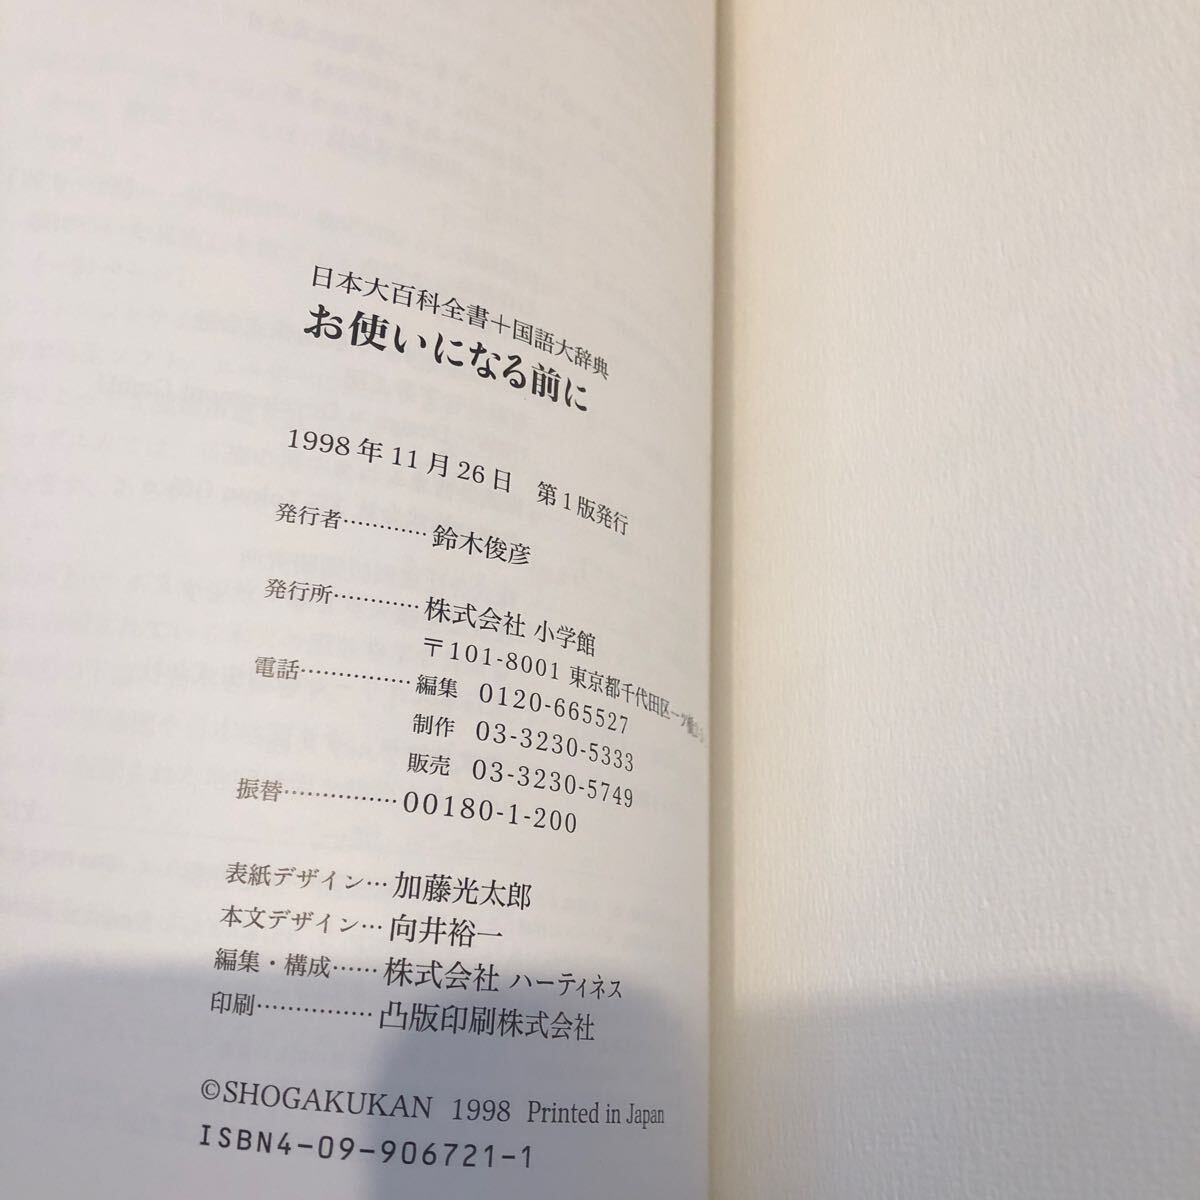  Shogakukan Inc. super niponika Япония большой различные предметы все документ + государственный язык большой словарь Windows версия CD-ROM 4 листов комплект (EPWING)